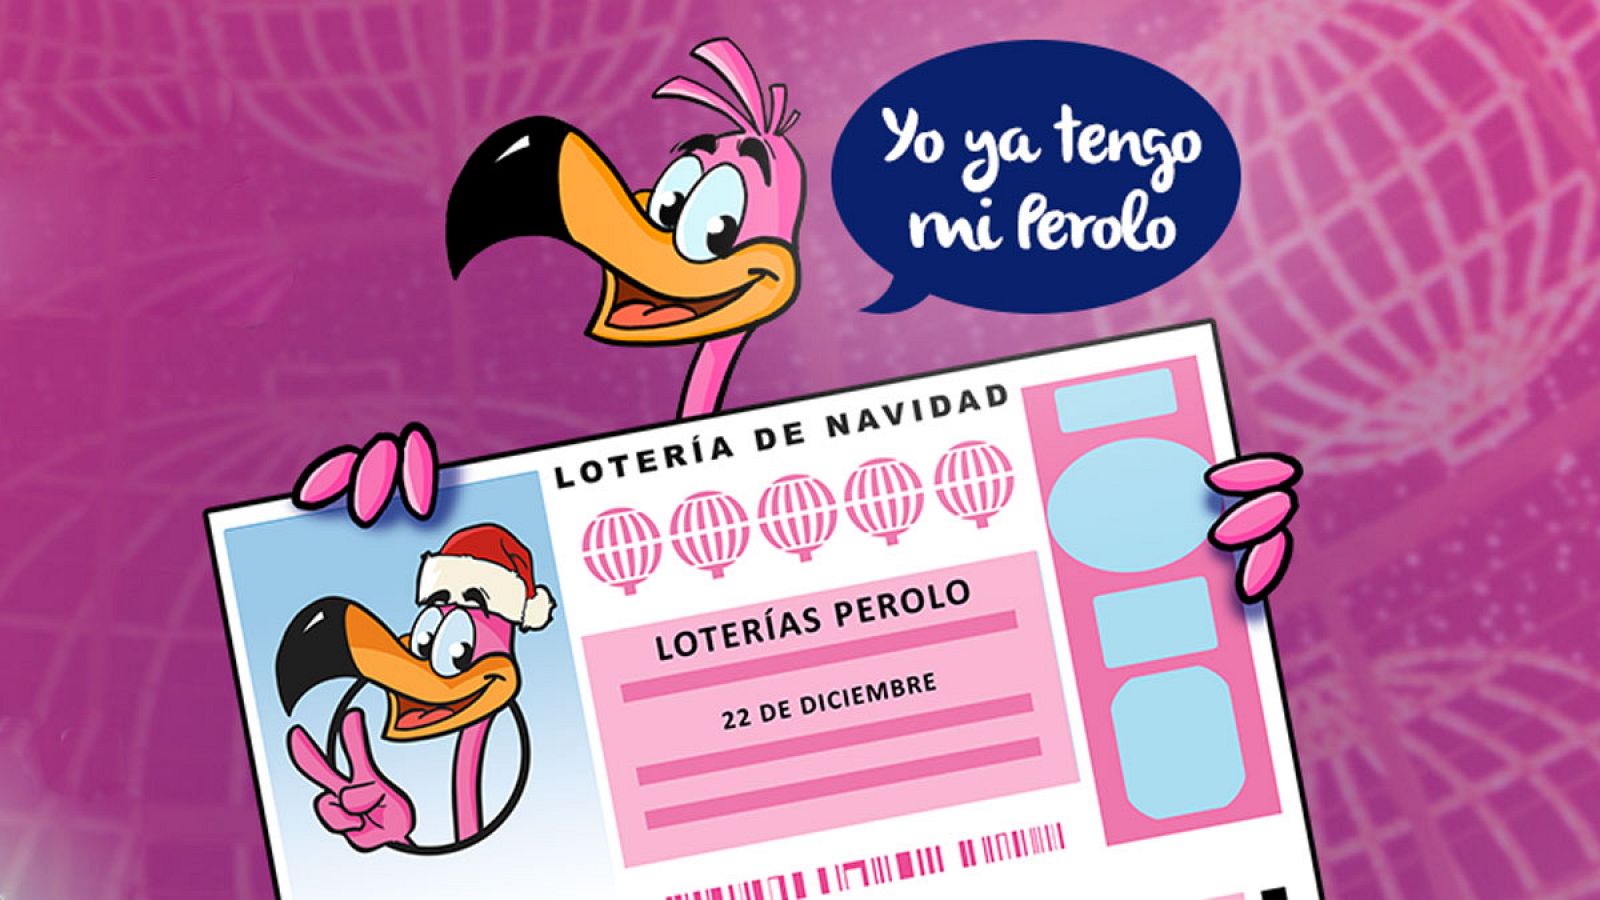 La administración Loterías Perolo de San Pedro del Pinatar persigue al 'Gordo' de la Lotería de Navidad